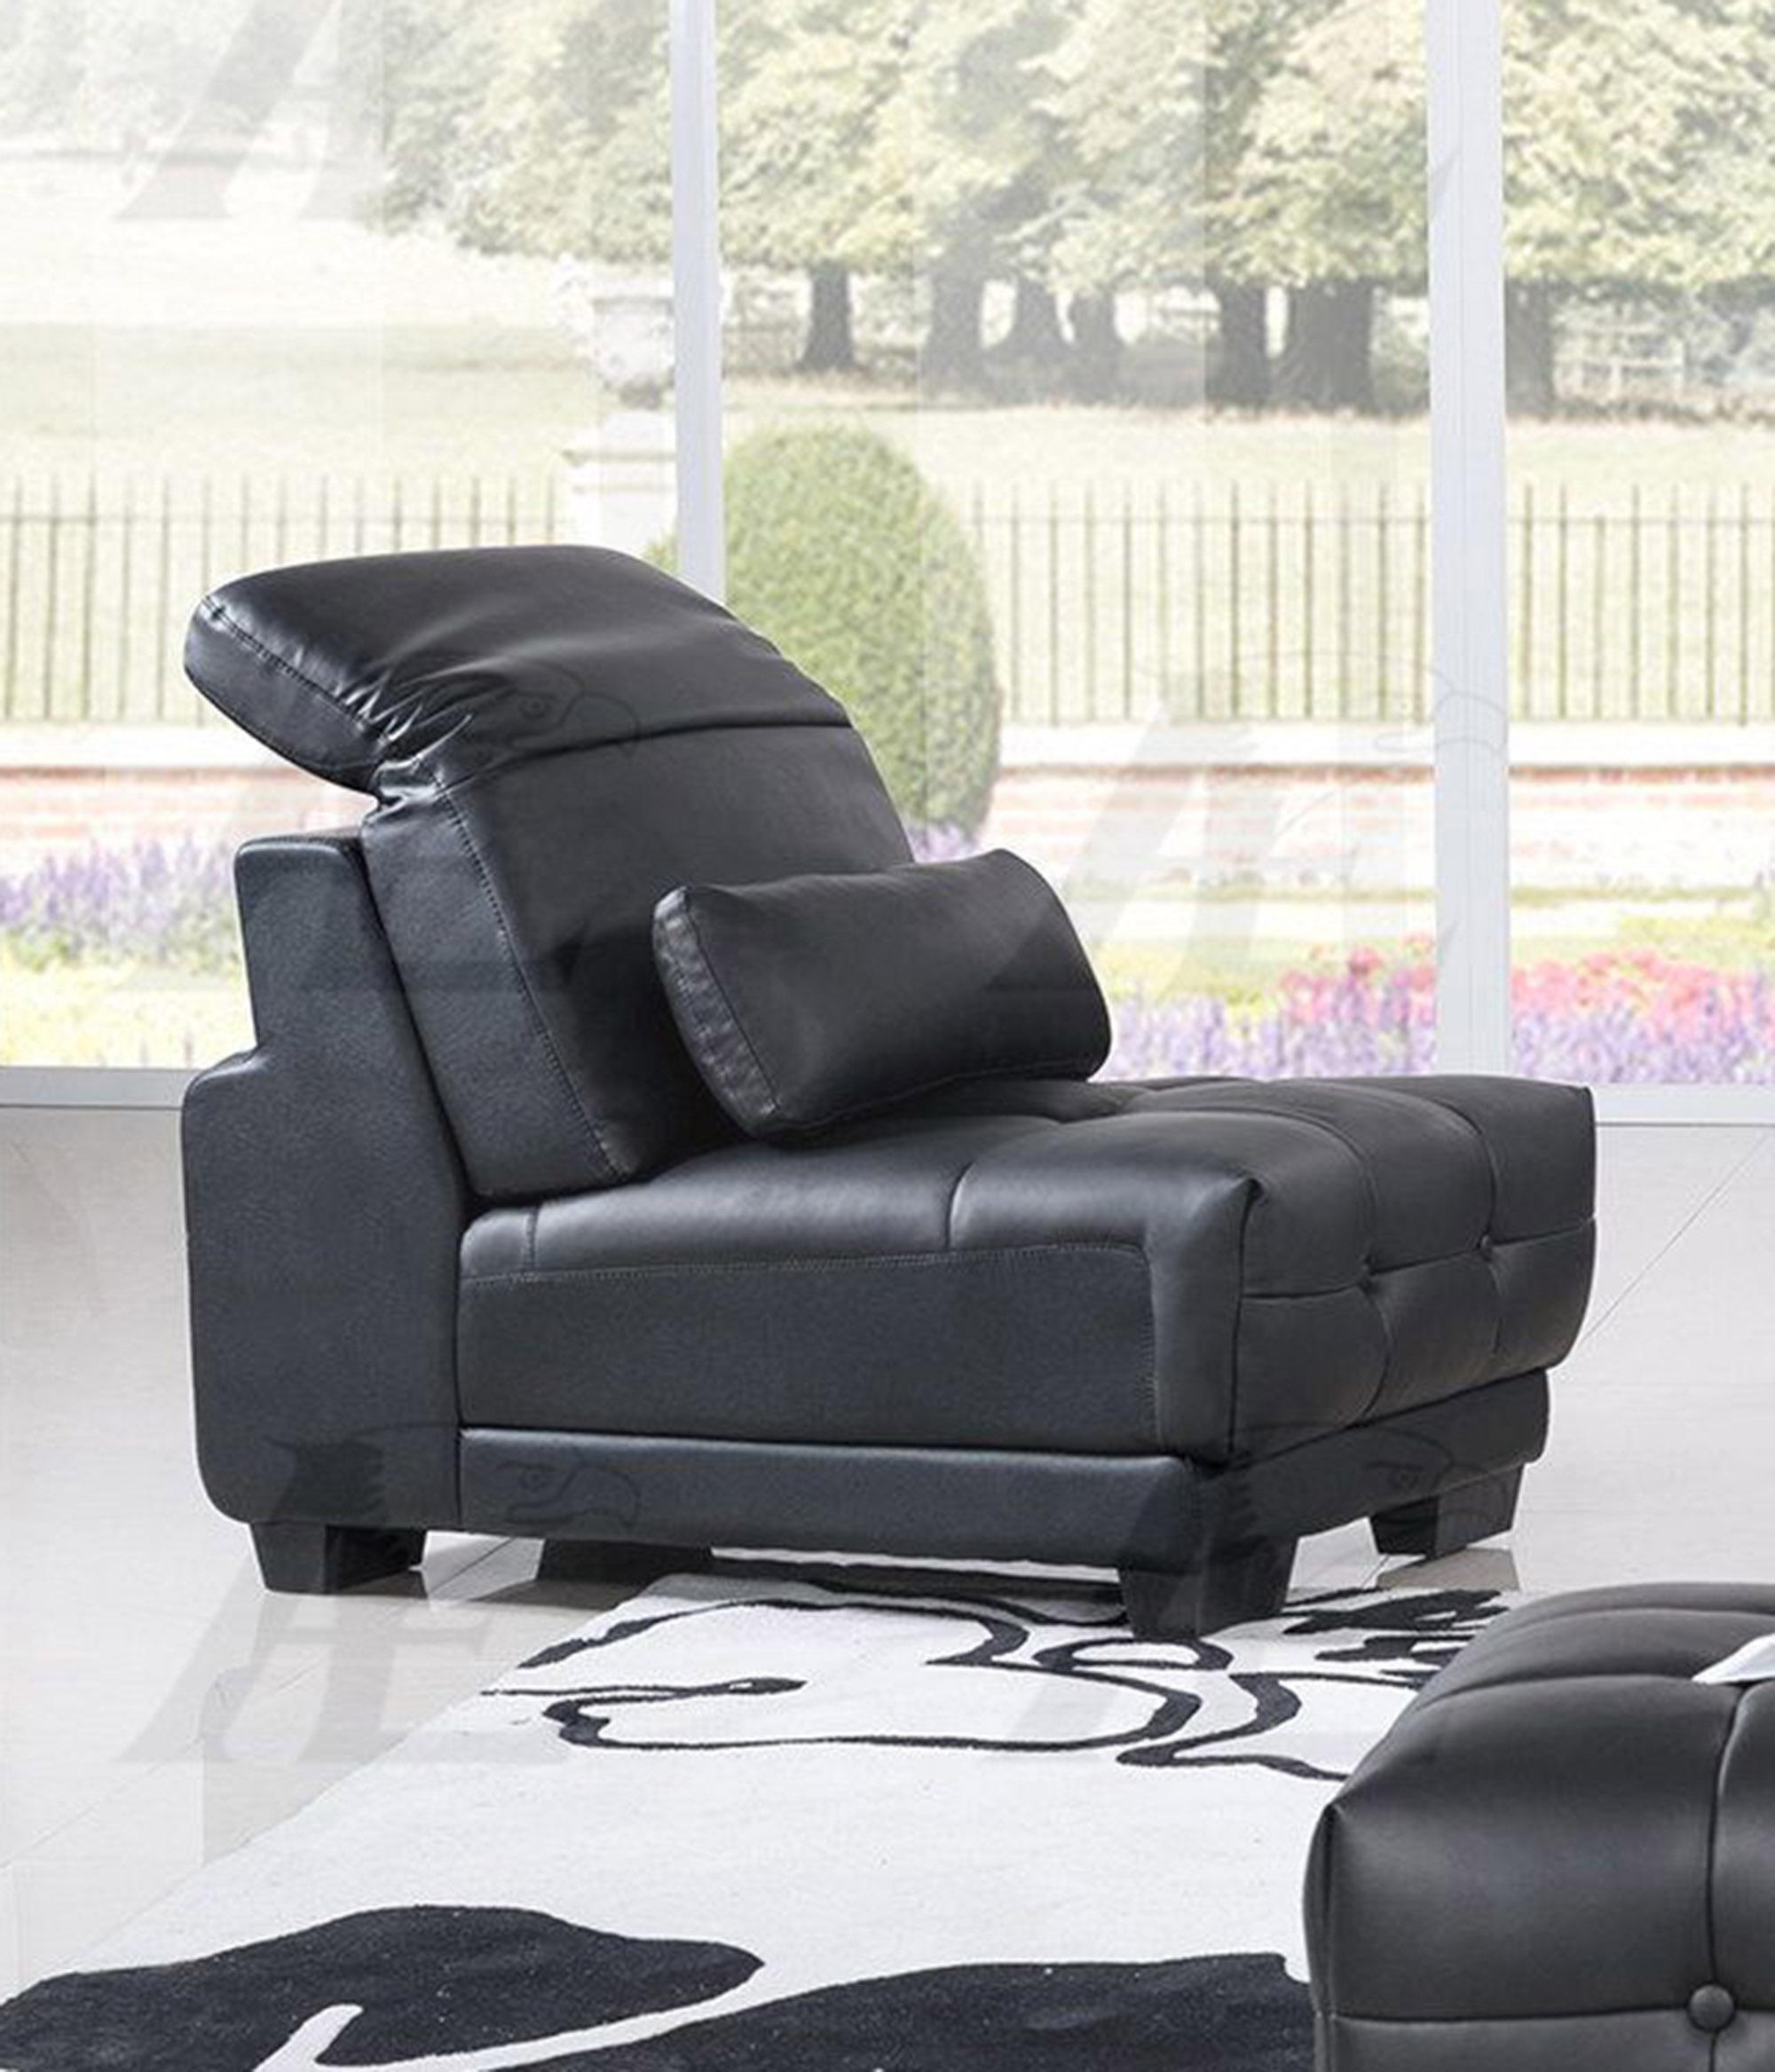 

    
American Eagle Furniture AE-L296-BK Sofa Chaise Chair and Ottoman Set Black AE-L296-BK Set-4 LHC
